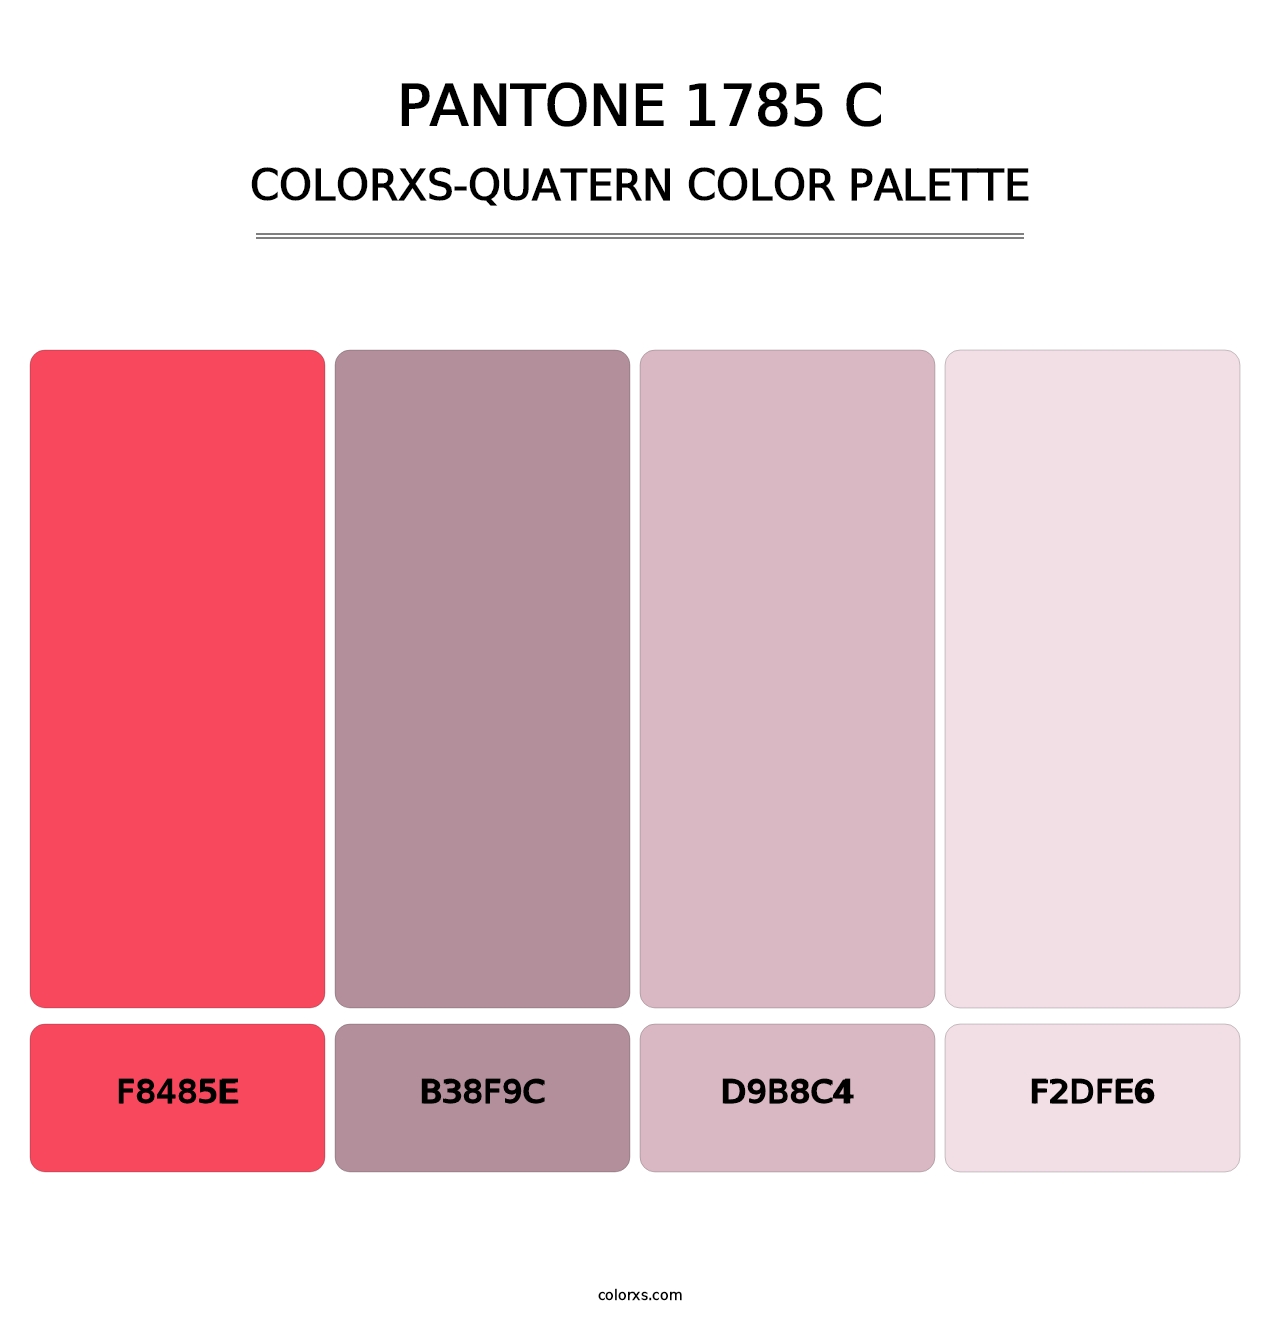 PANTONE 1785 C - Colorxs Quatern Palette